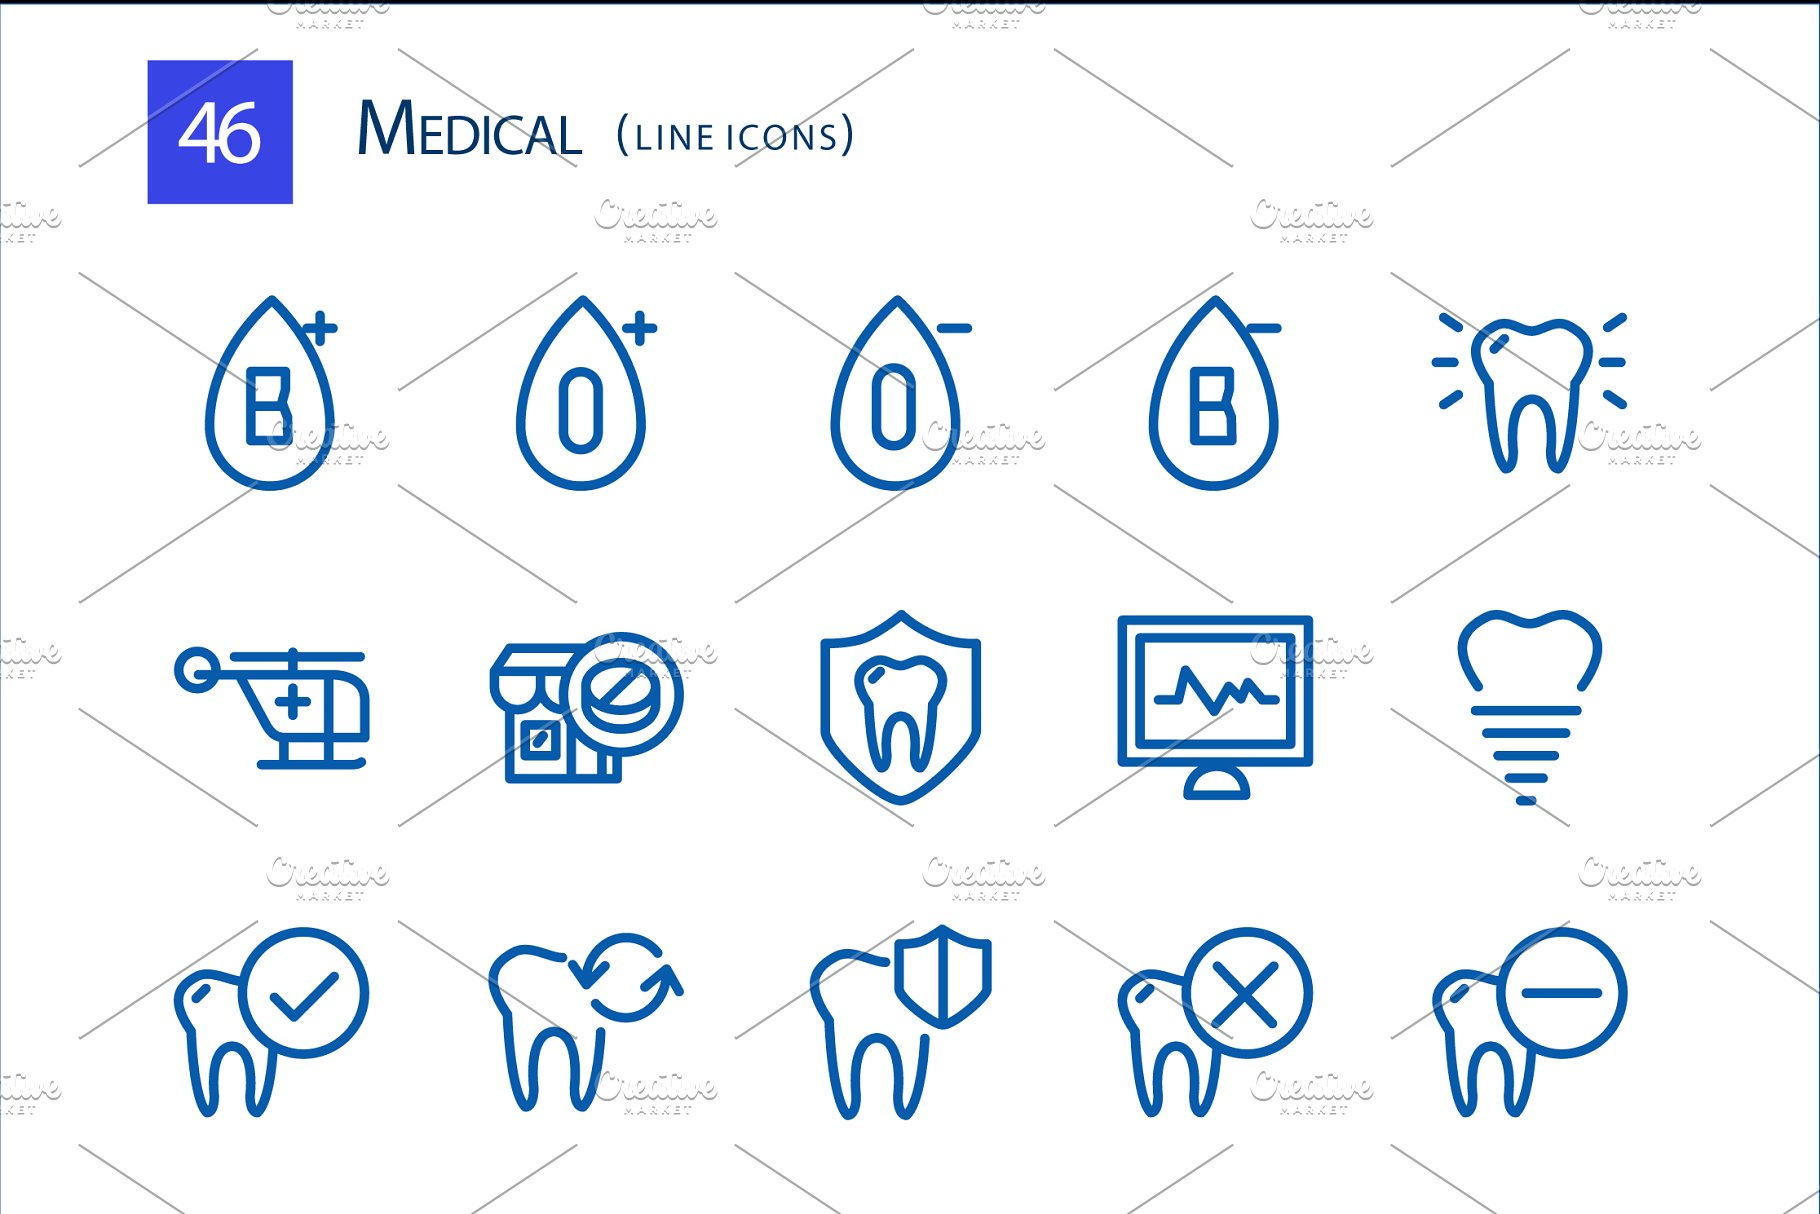 医疗线型图标 46 Medical Line Icons #